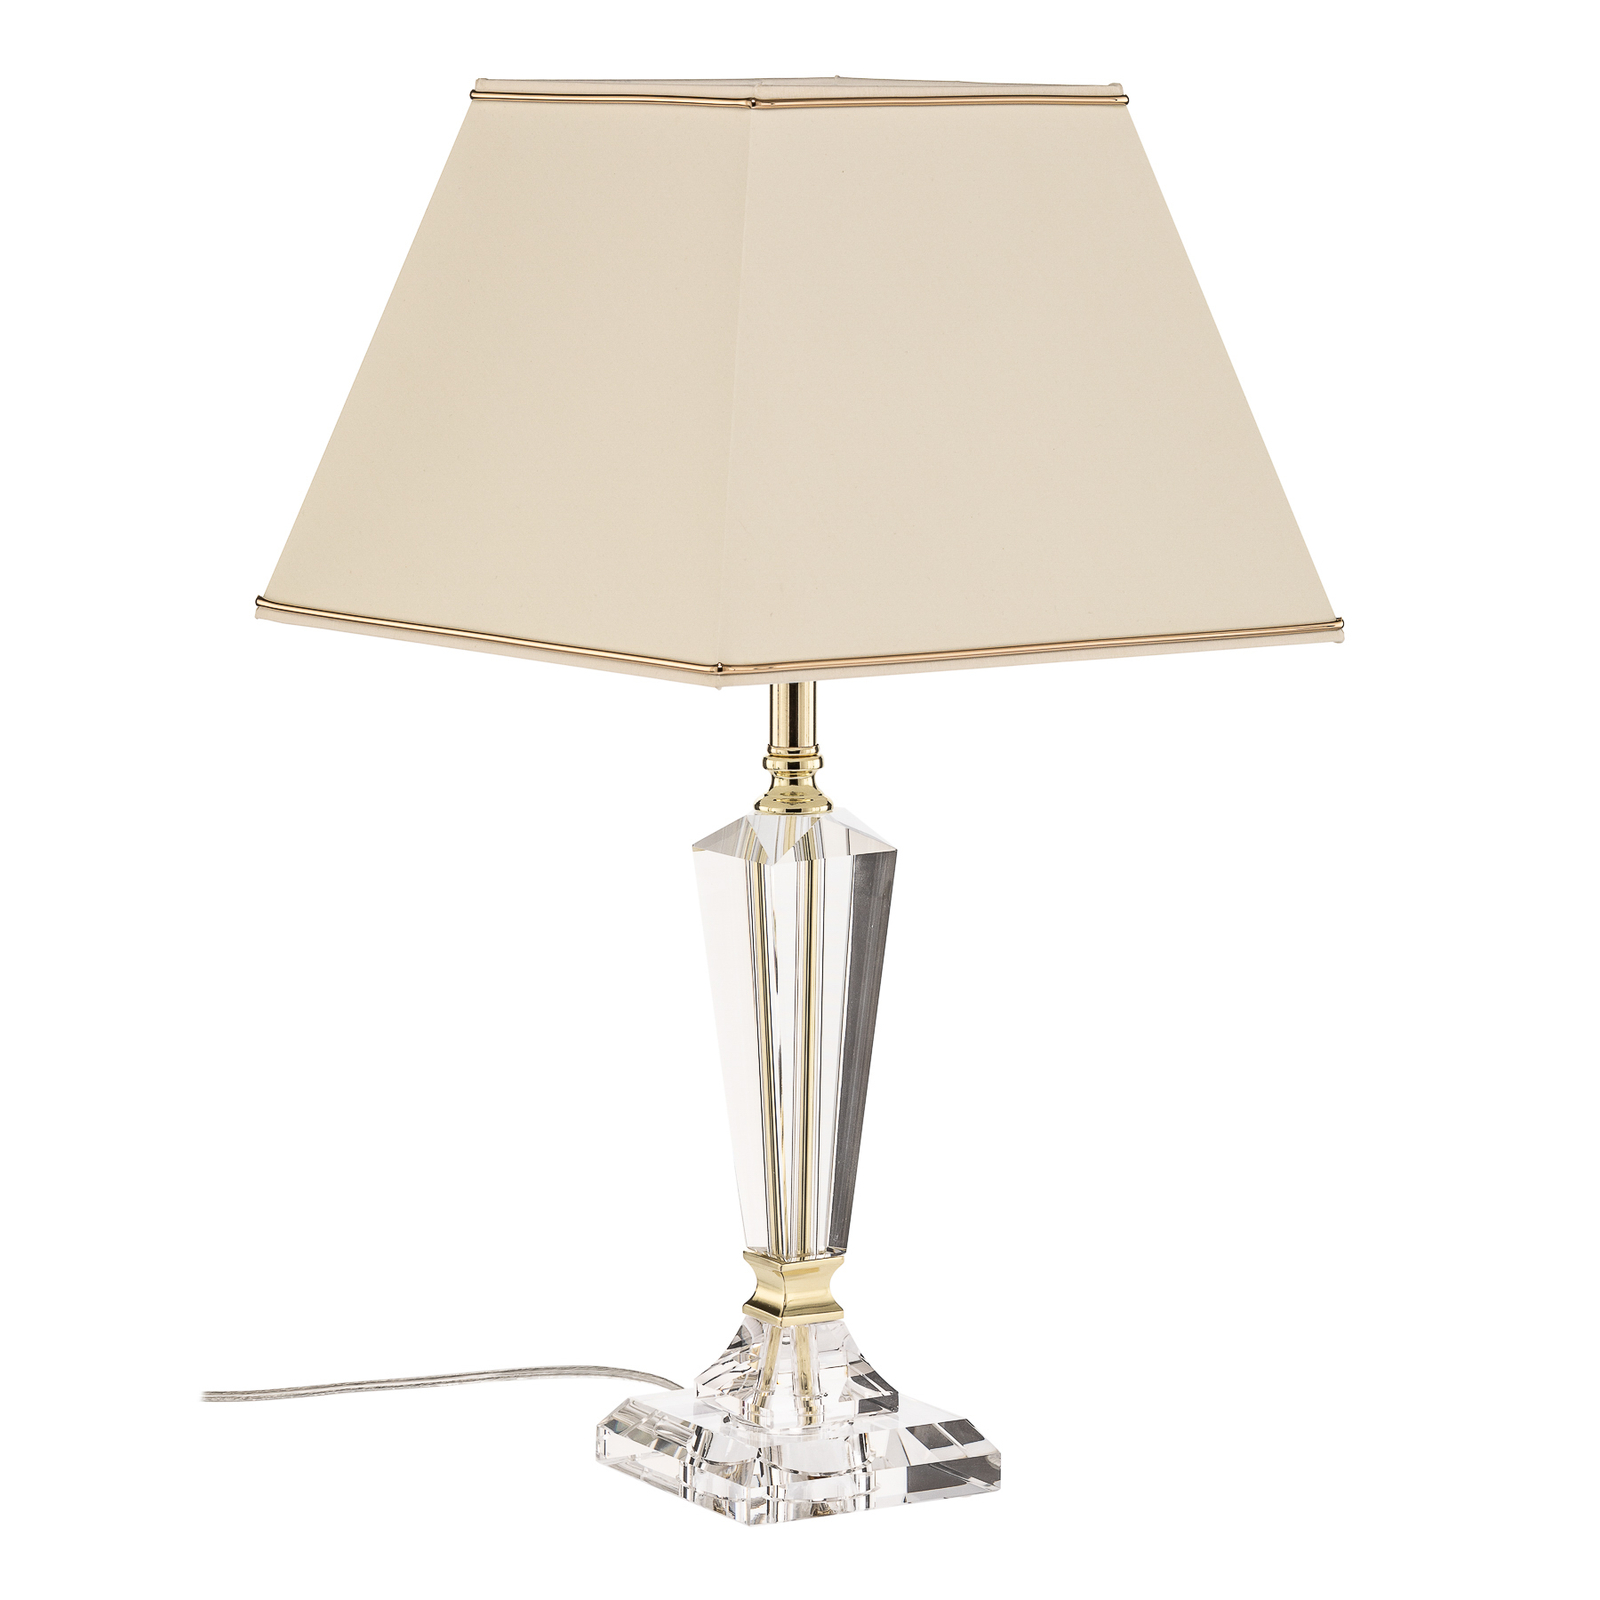 Lampa stołowa Veronique stopa wąska, kremowy/złoty